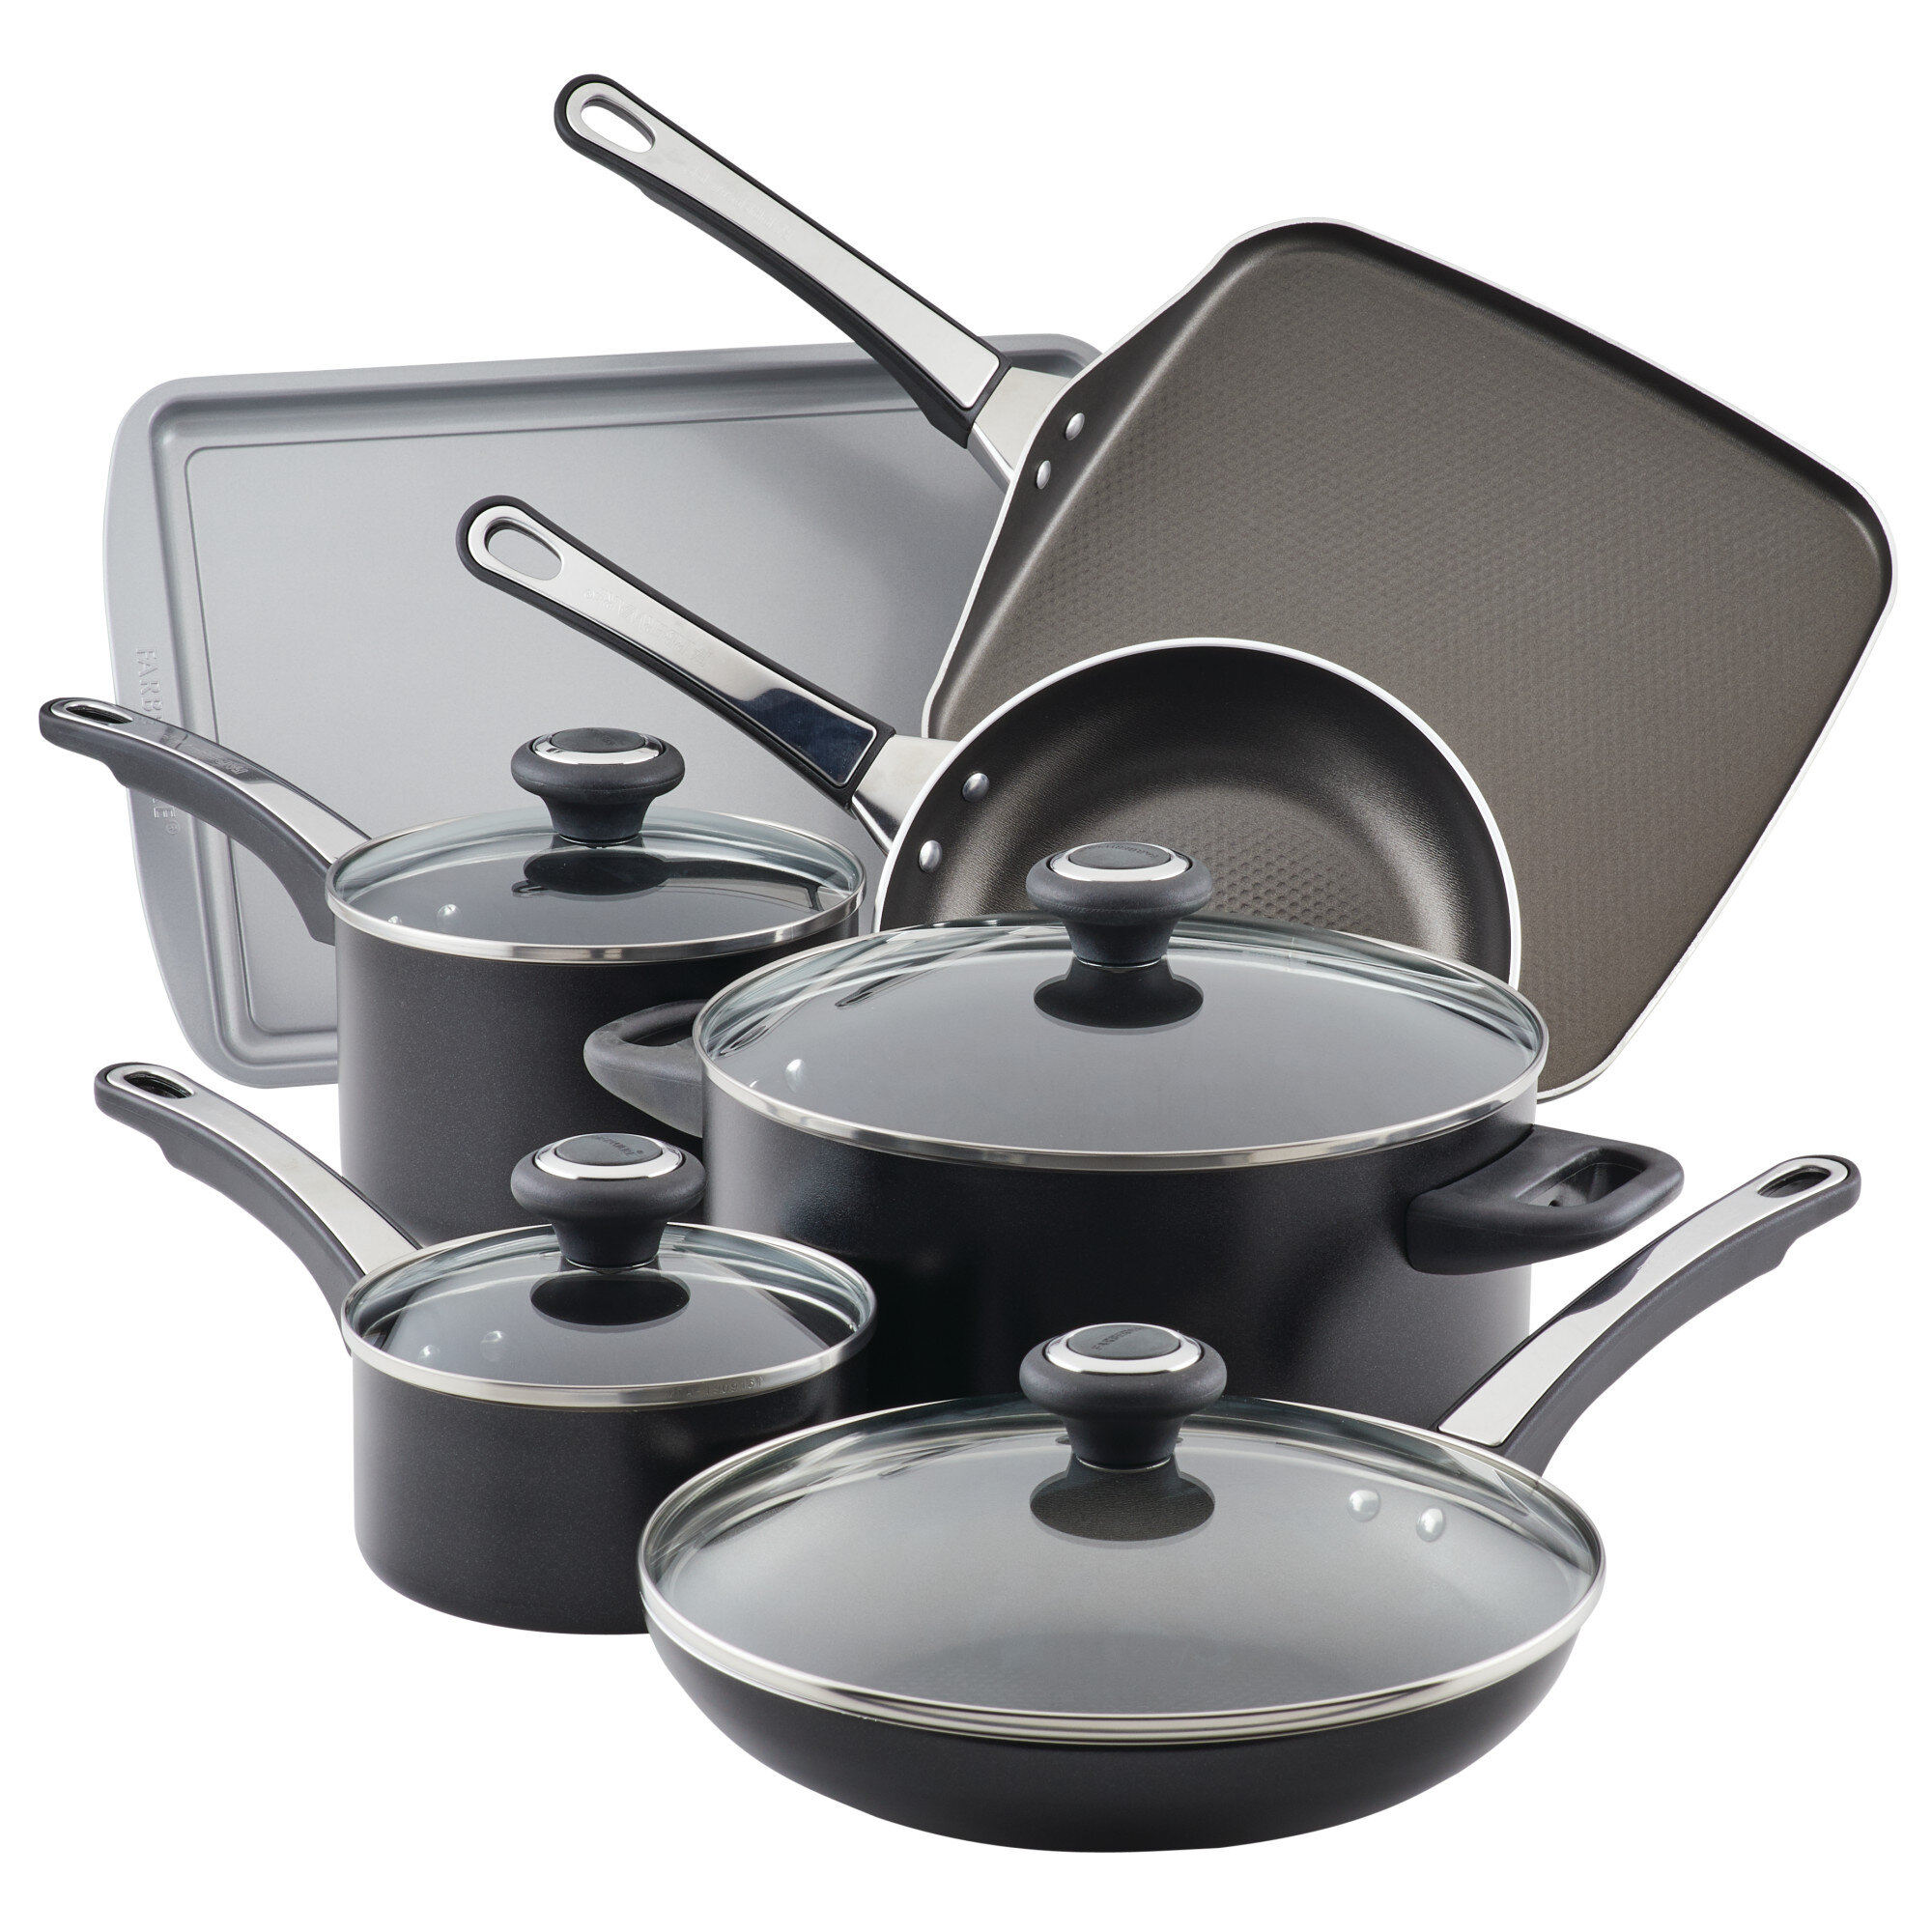 https://assets.wfcdn.com/im/60247754/compr-r85/1703/170311773/farberware-high-performance-nonstick-cookware-pots-and-pans-set-17-piece.jpg